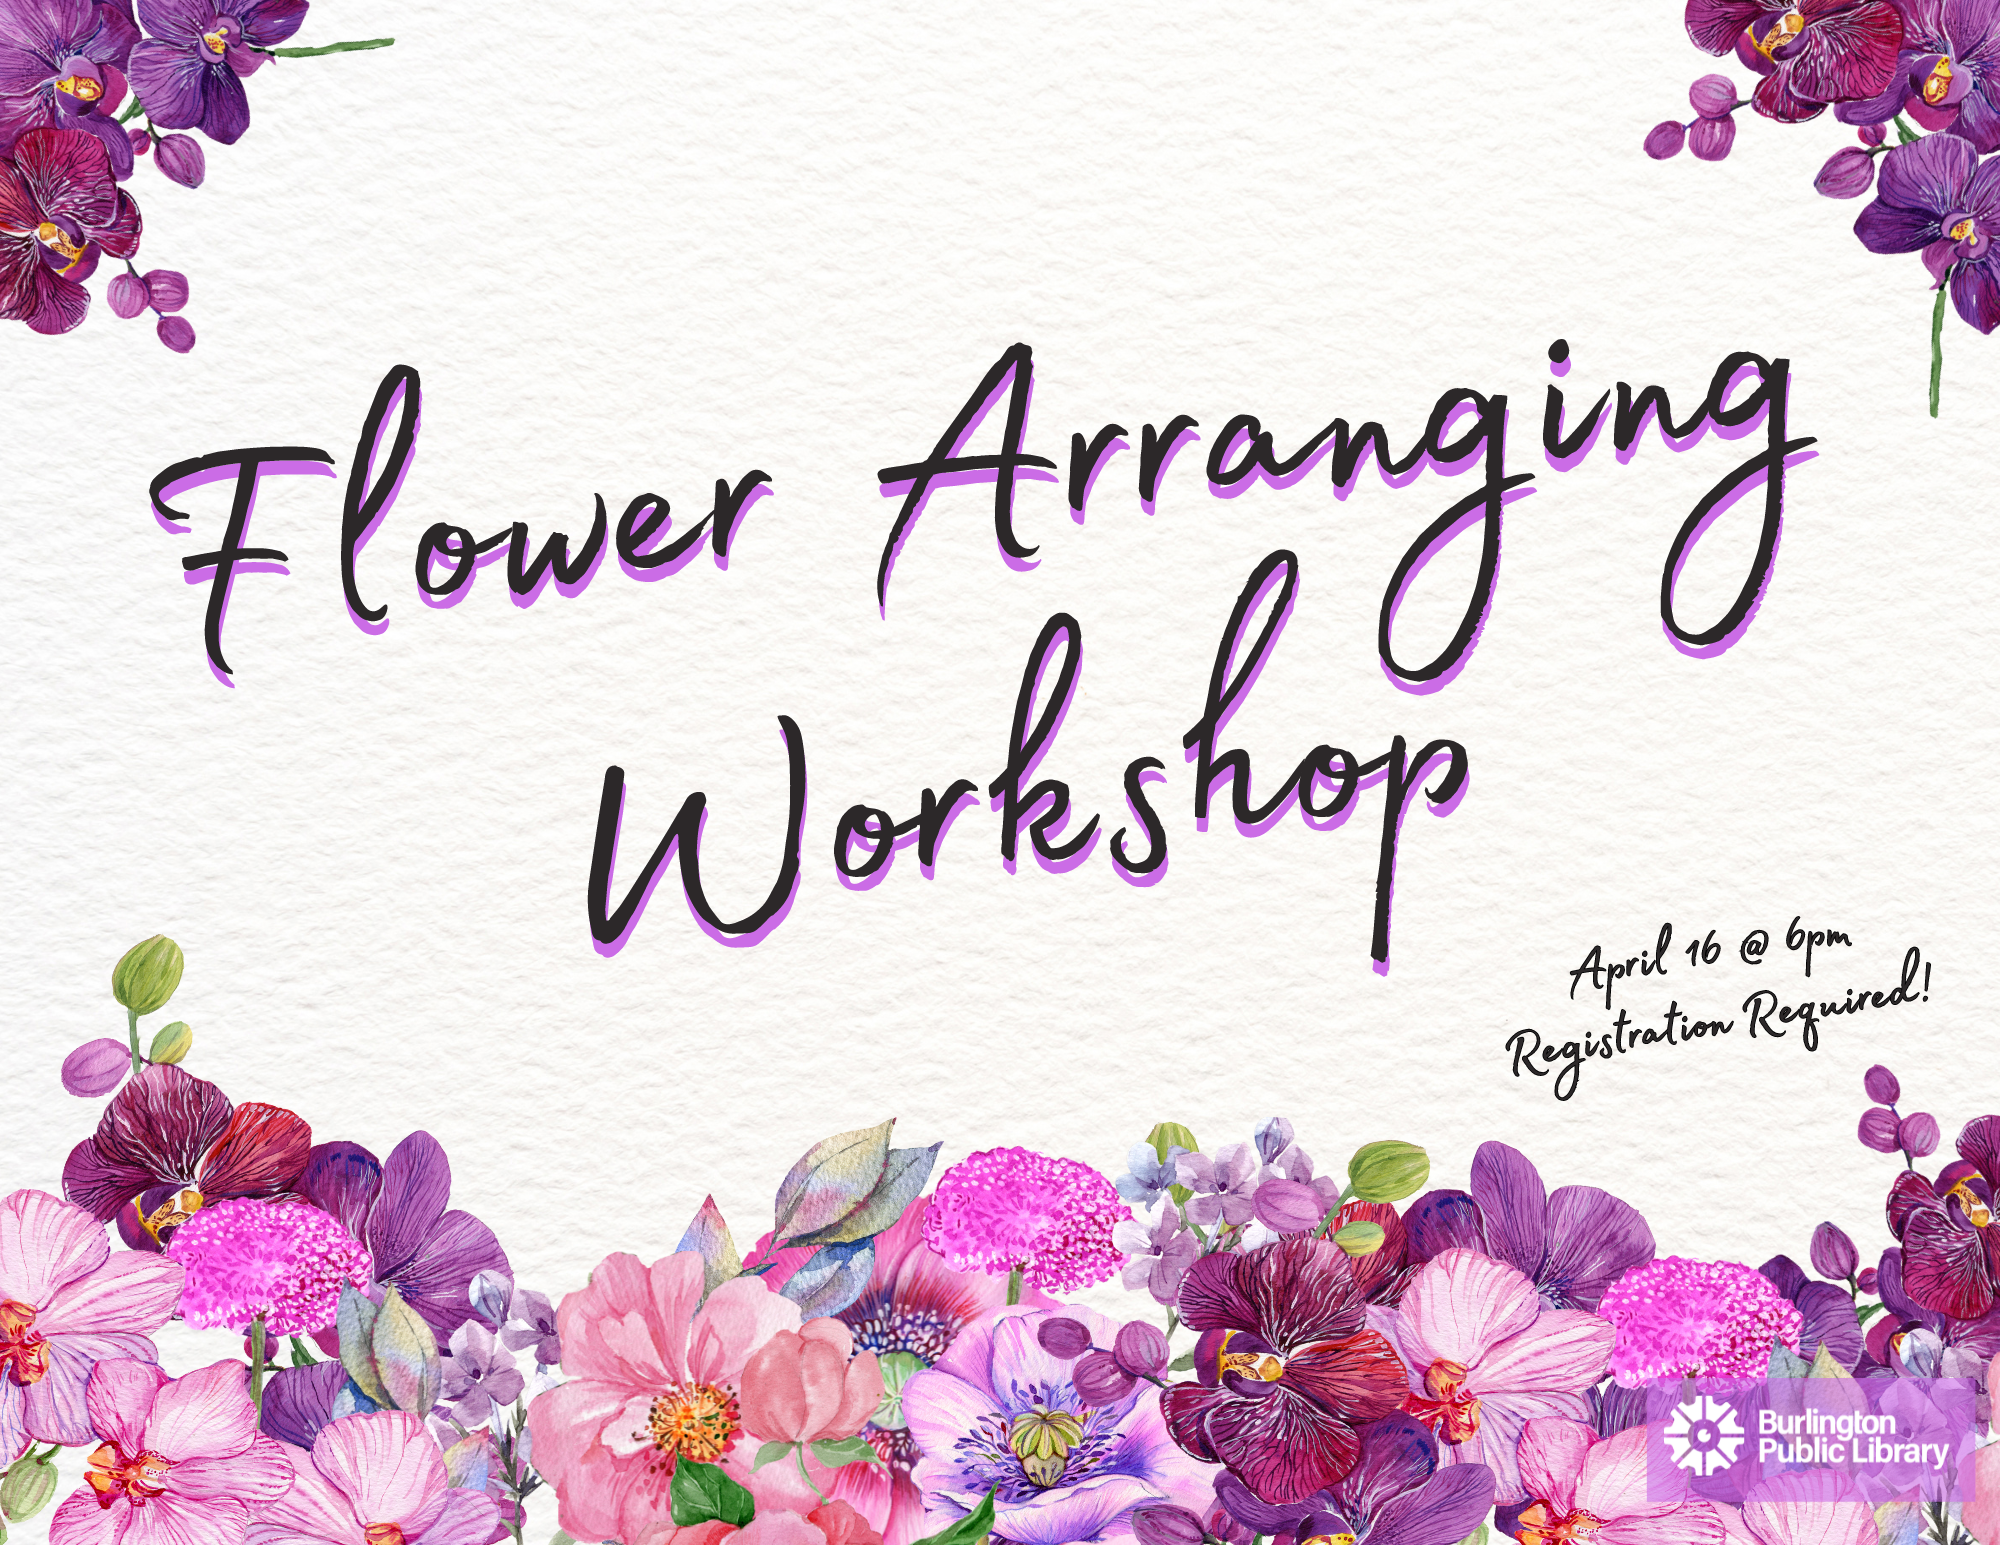 Flower Arranging Workshop